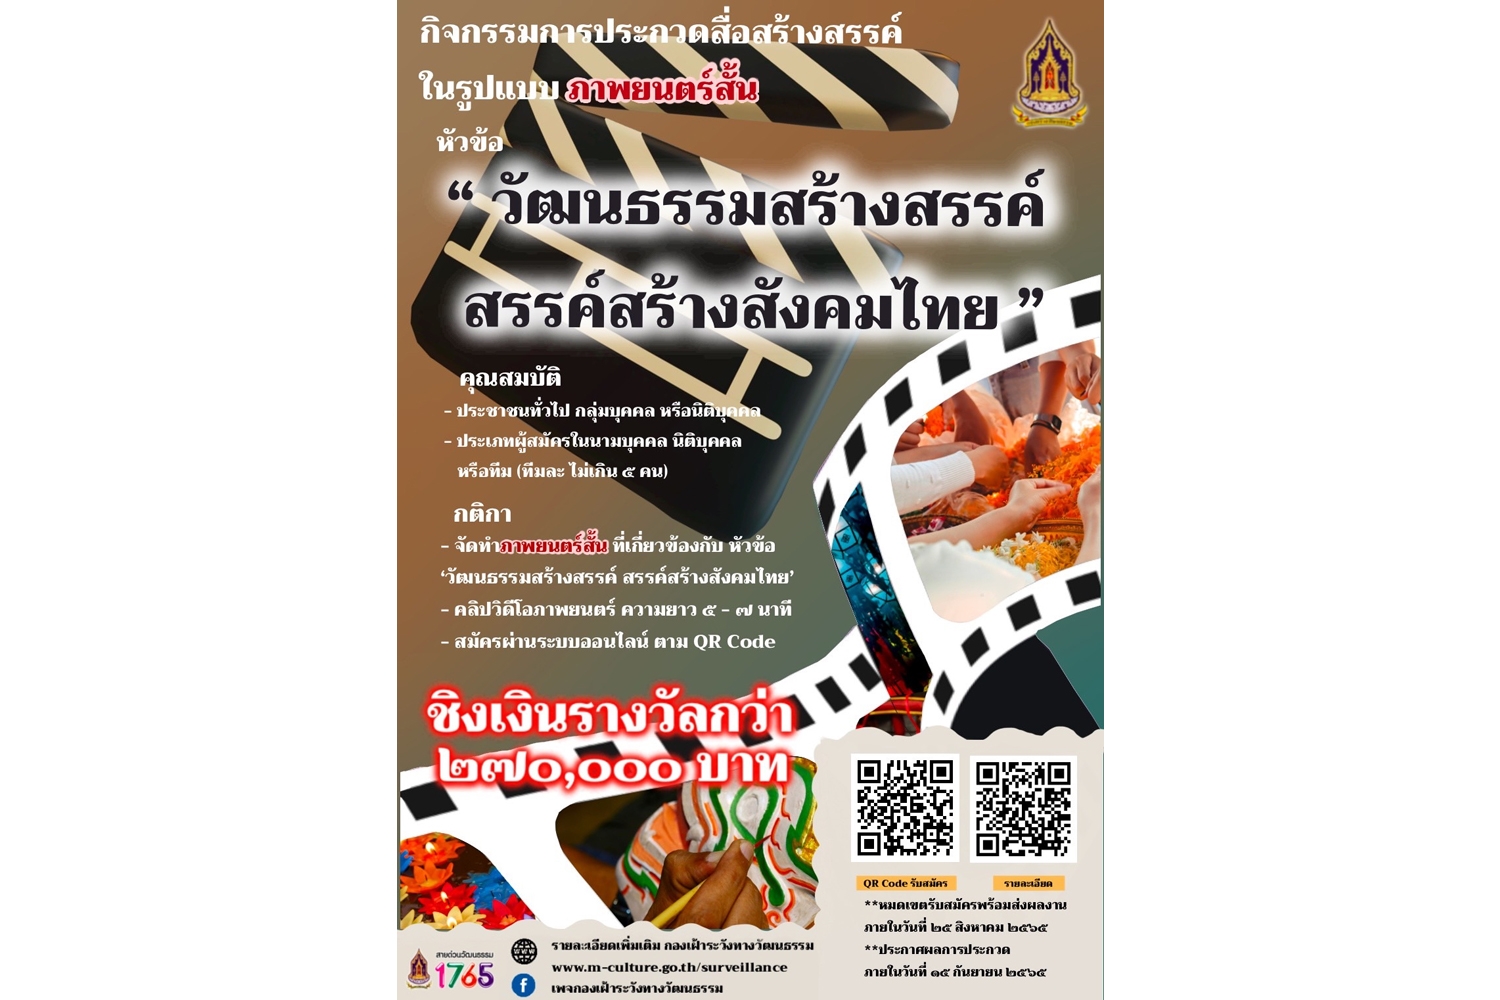 วธ.ชวนเด็ก-เยาวชน และบุคคลทั่วไปเปิดเวทีผลิตภาพยนตร์สั้น  ประกวดสื่อสร้างสรรค์ หัวข้อ “วัฒนธรรมสร้างสรรค์ สรรค์สร้างสังคมไทย” 